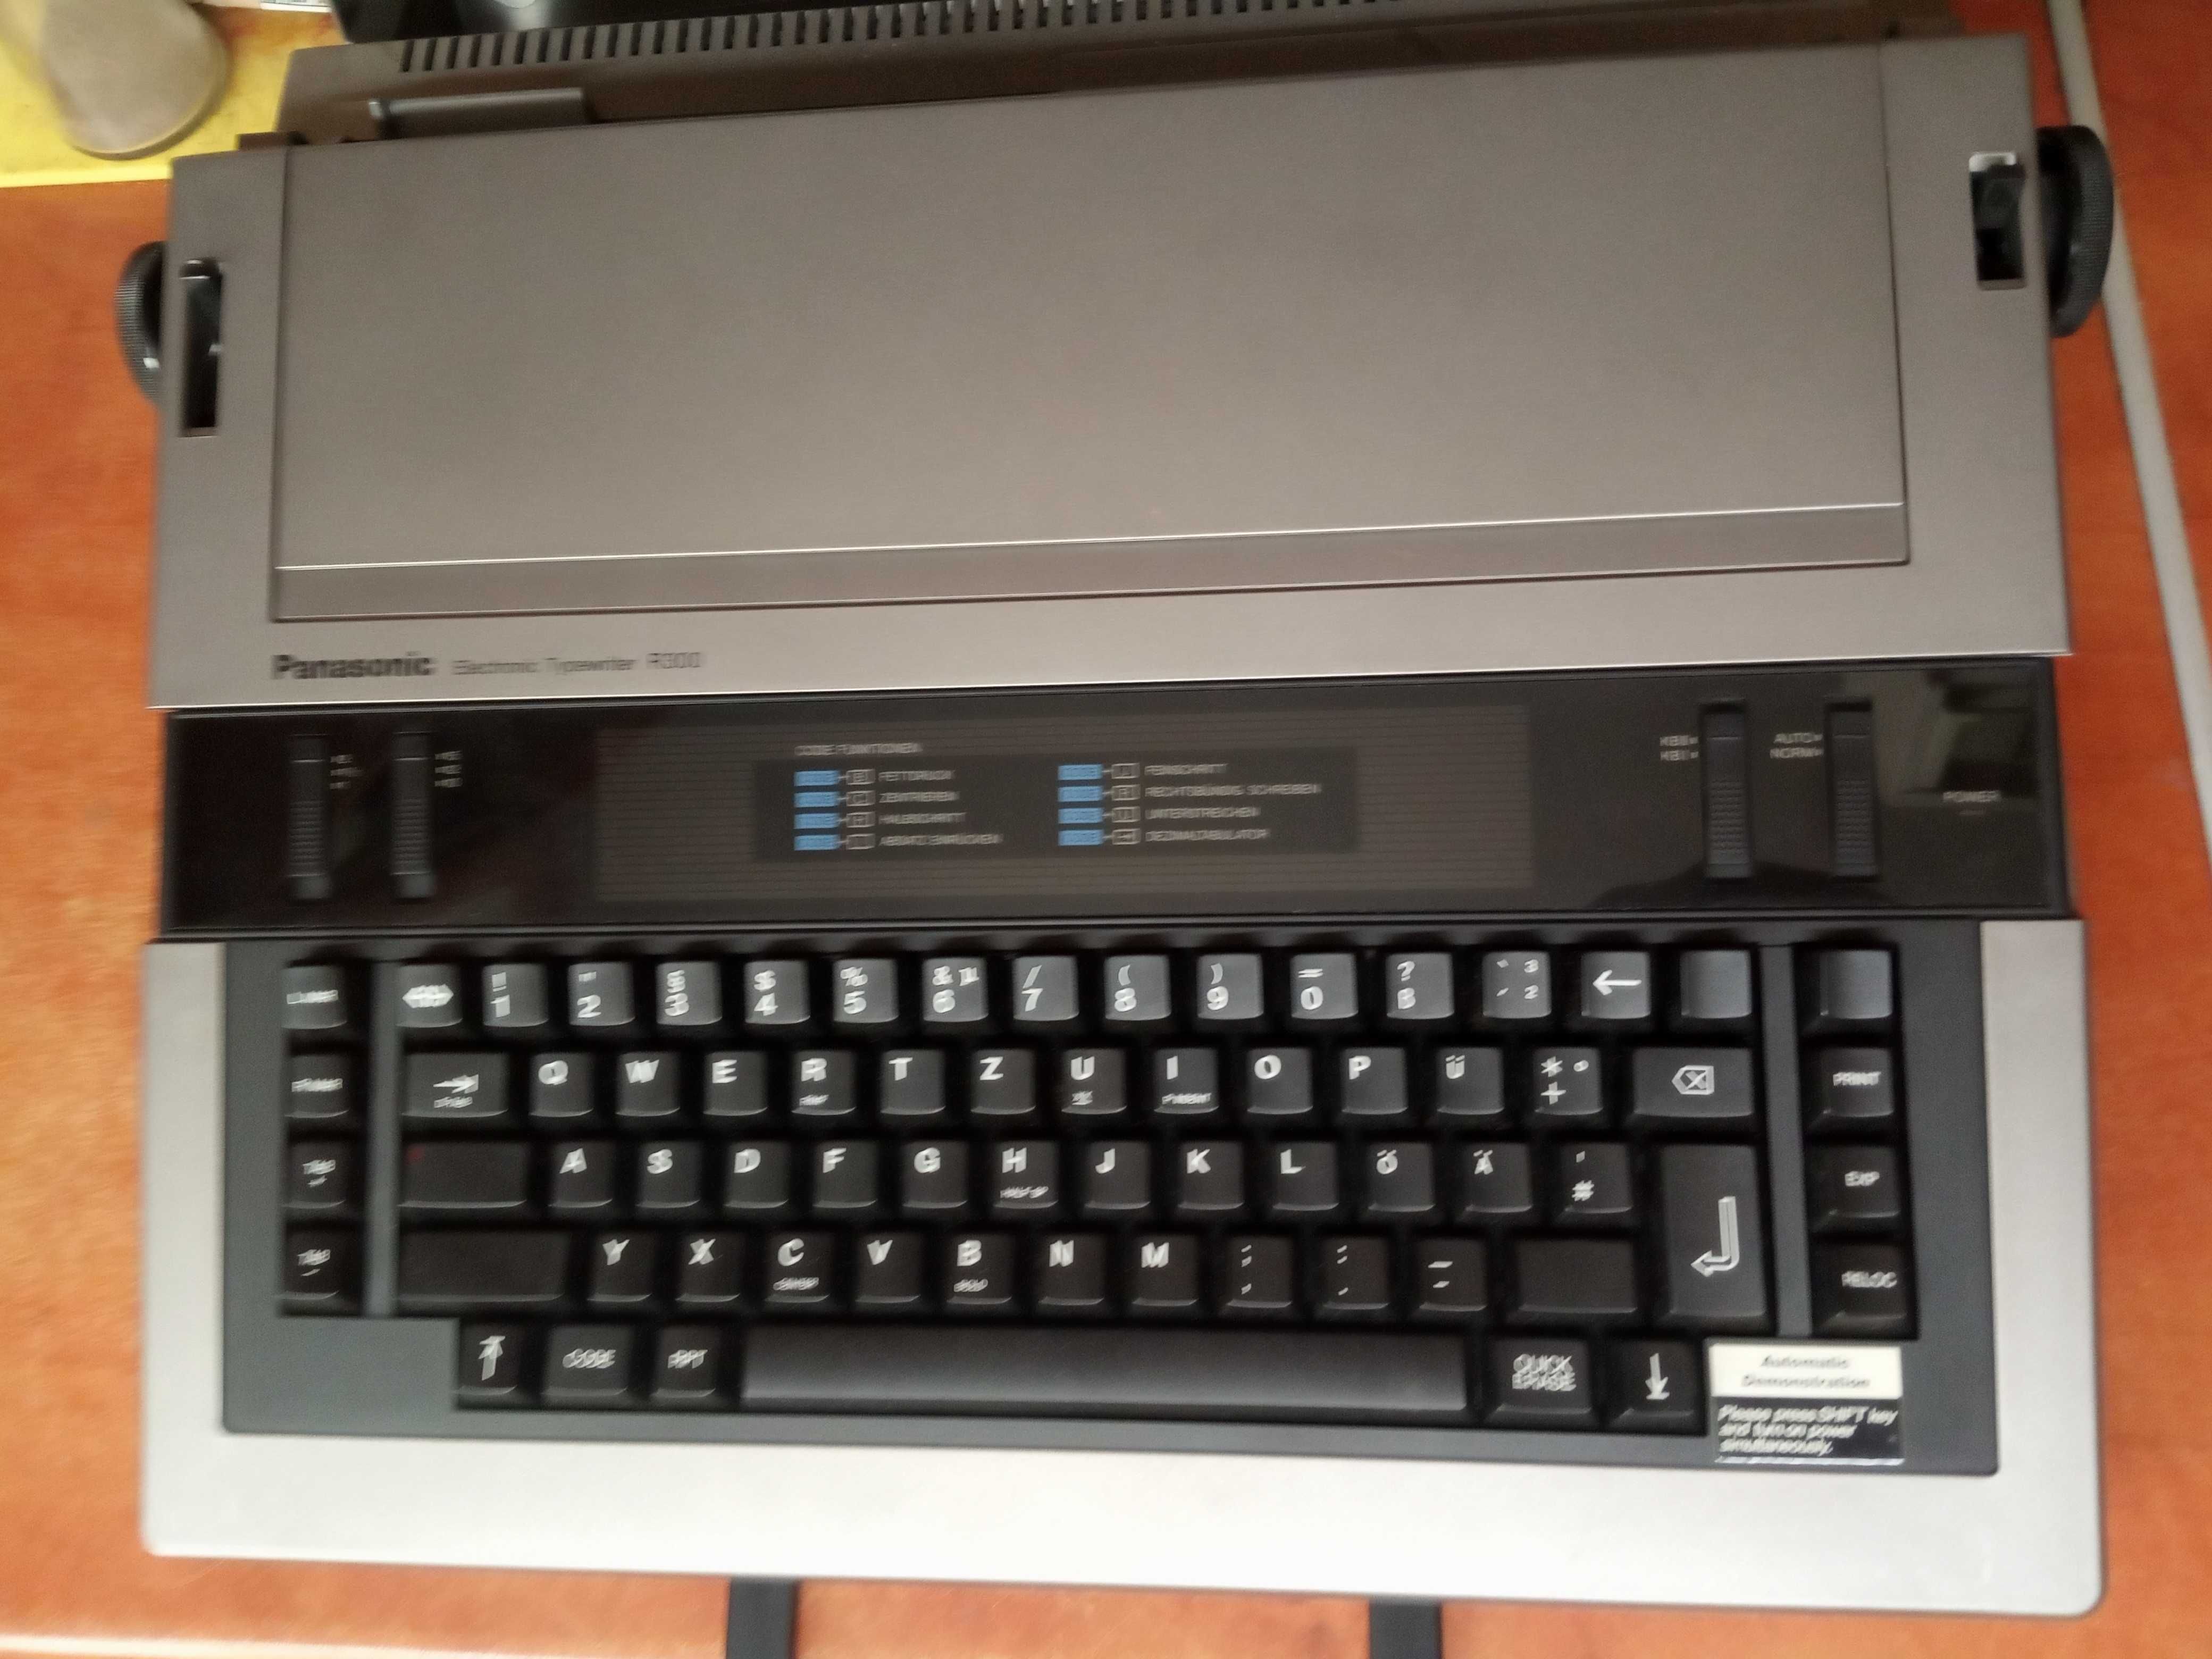 Elektroniczna maszyna do pisania PANASONIC R300, ładny stan wizualny